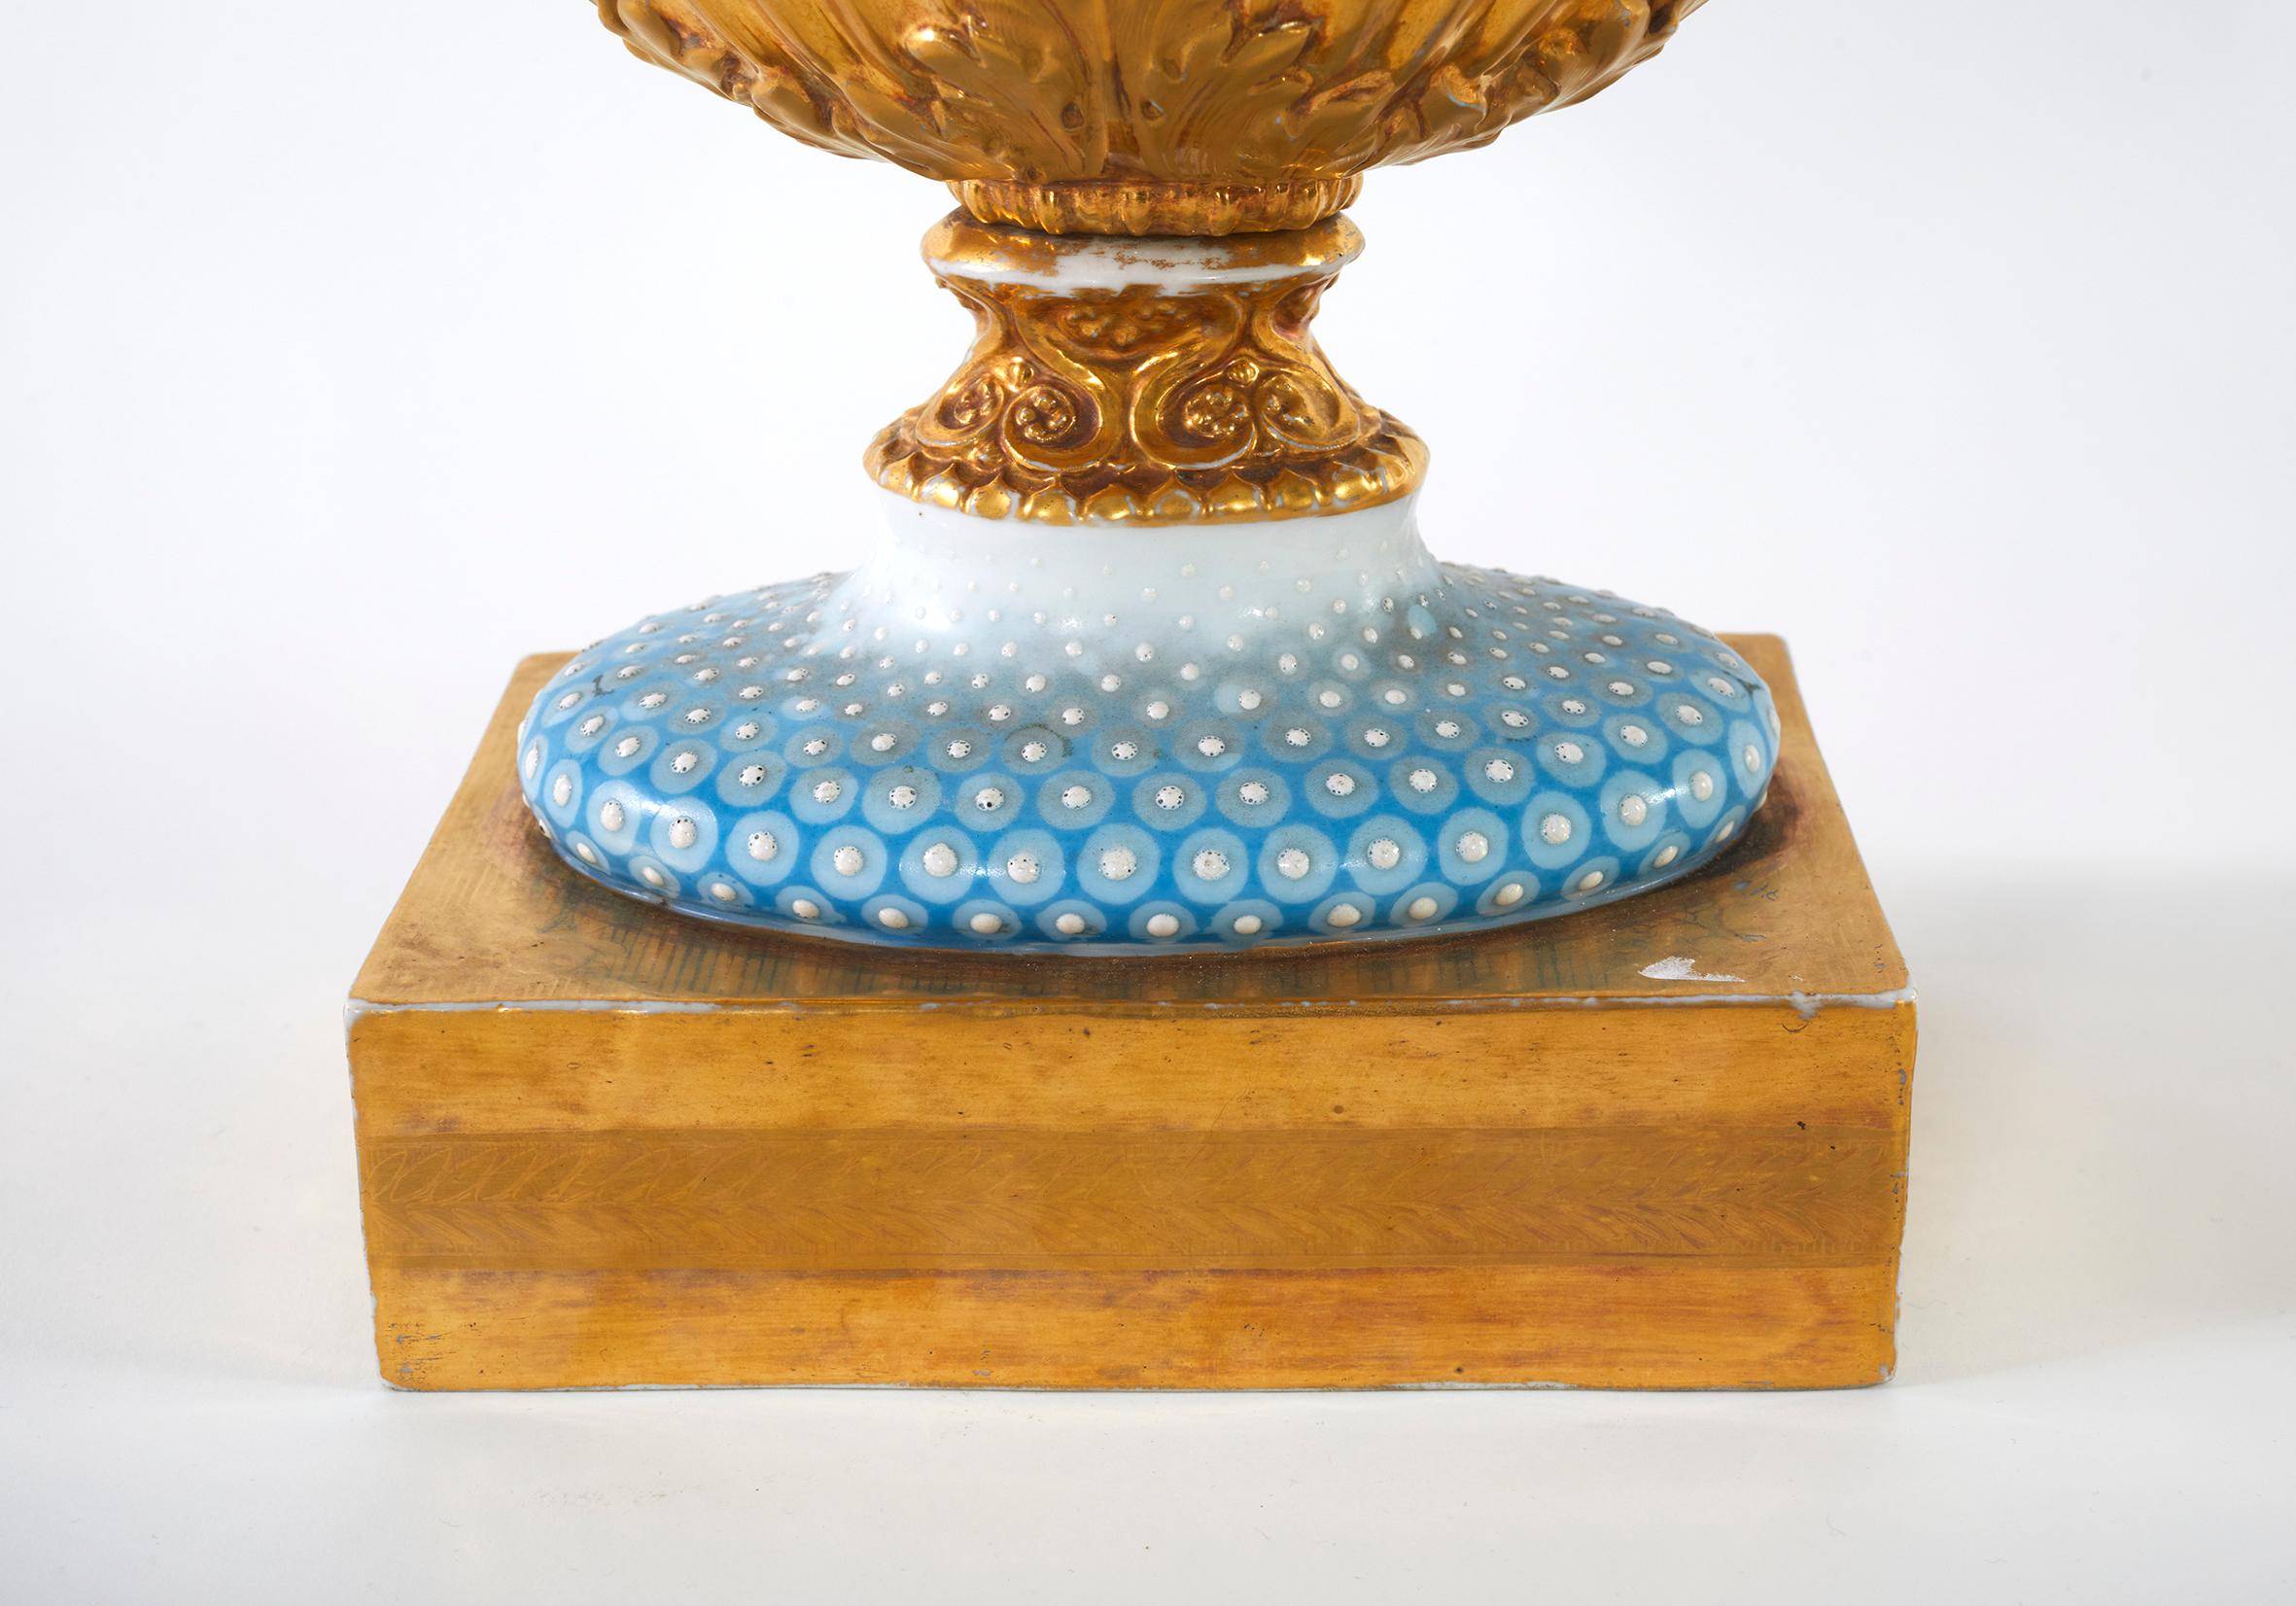 Paar französische figurale glasierte Porzellanvasen / Urnen aus dem 19. Jahrhundert mit vergoldeten, bemalten Designszenen. Jede Vase / Urne ist in gutem Zustand. Es wurden keine Absplitterungen, Risse oder Restaurierungen beobachtet. Minore